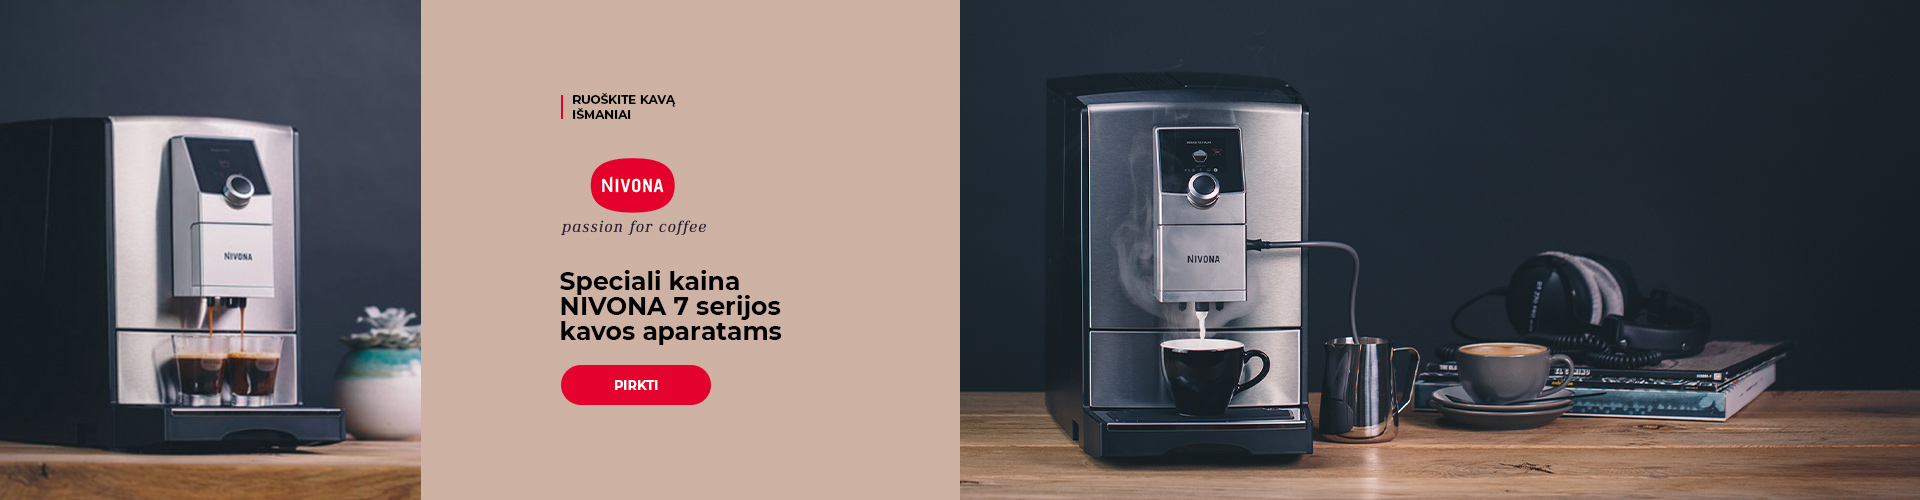 Speciali kaina NIVONA 7 serijos kavos aparatams